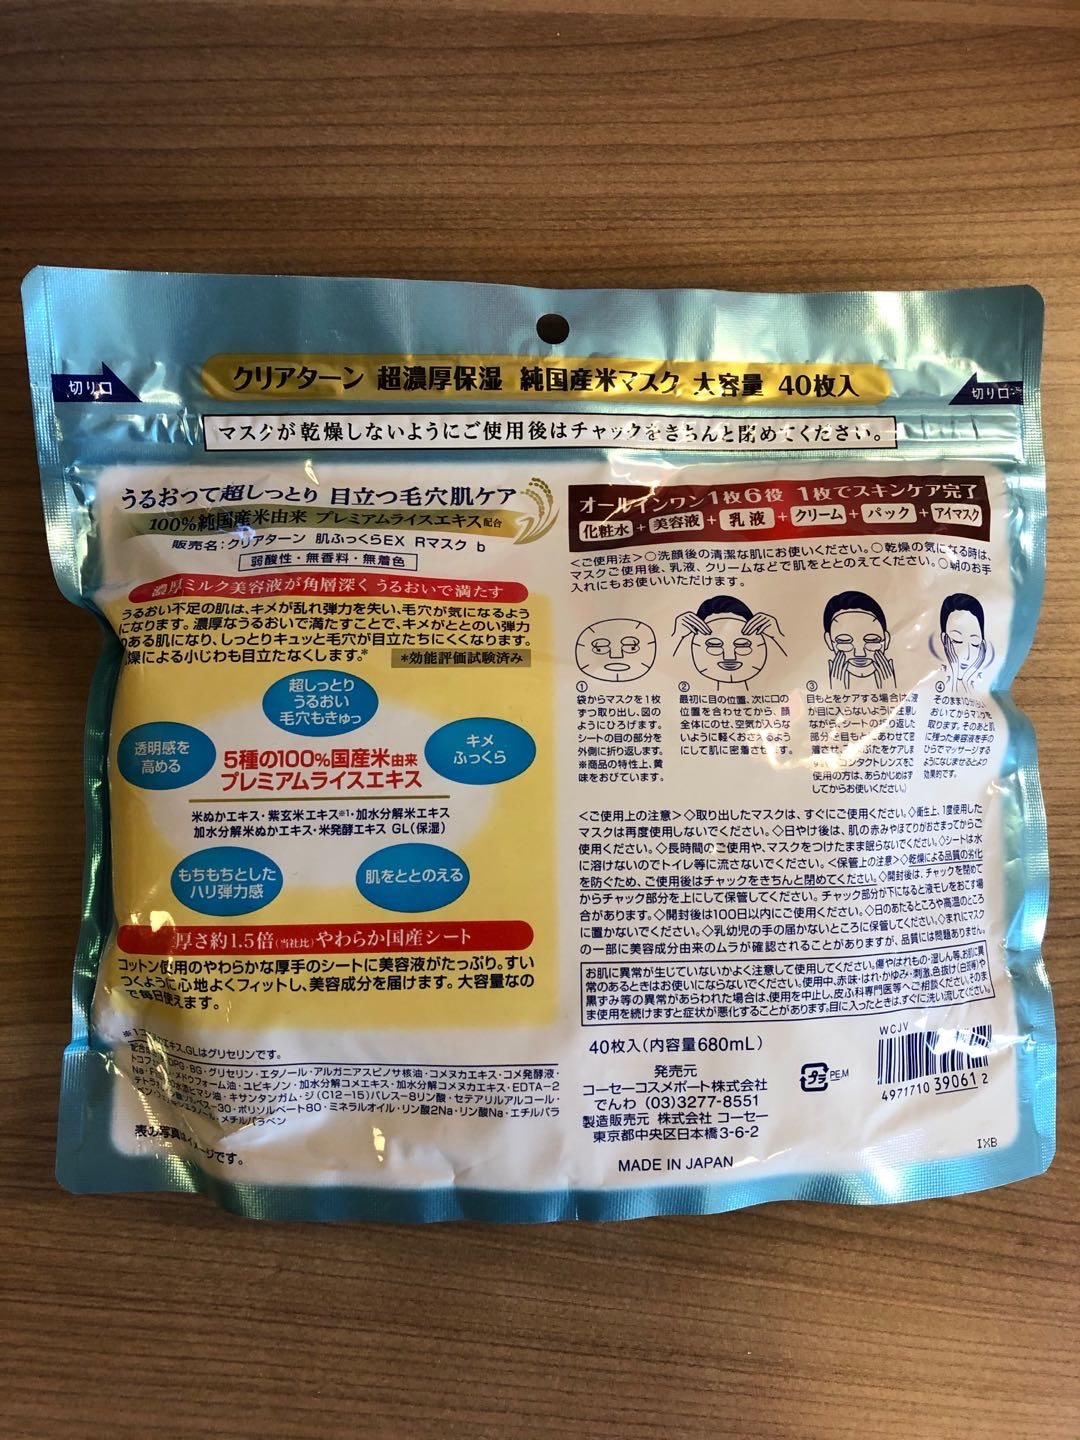 日本KOSE高絲 純米精華濃厚保濕面膜